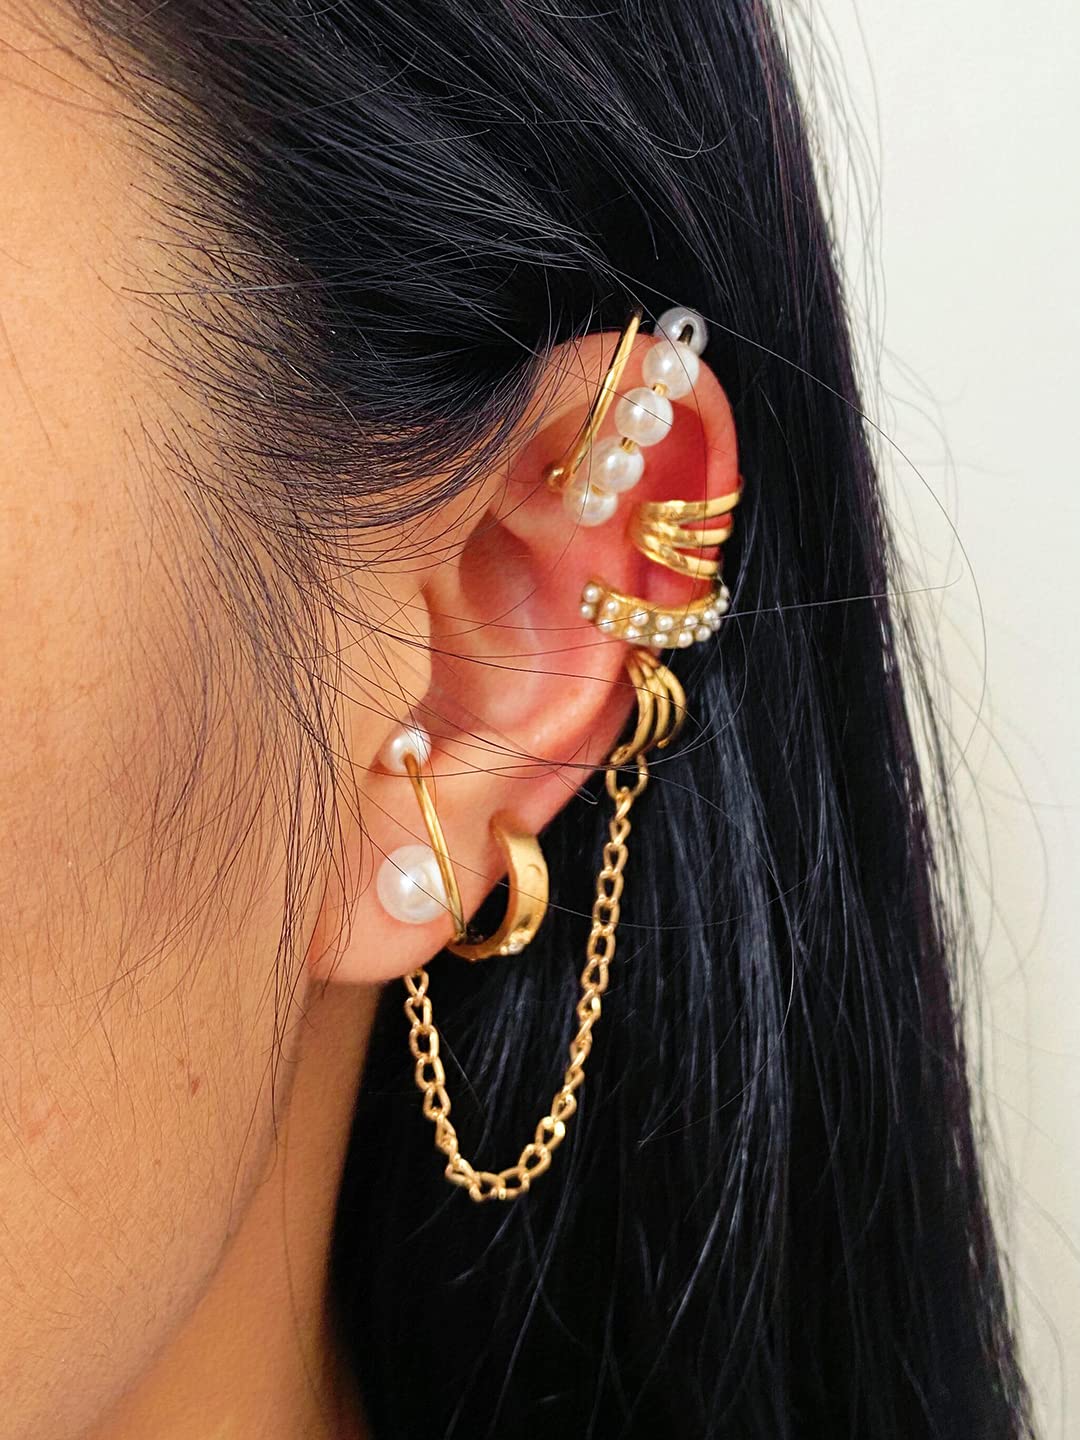 Buy IKASEFU Leaf Earrings Ear Hook, Zircon Leaves Ear Cuff for Women Leaves  Wrap Around Ear Earrings for Girls No Piercing Ear Clips Ear Cuff for Women  Women Valentines Day Gift Birthday